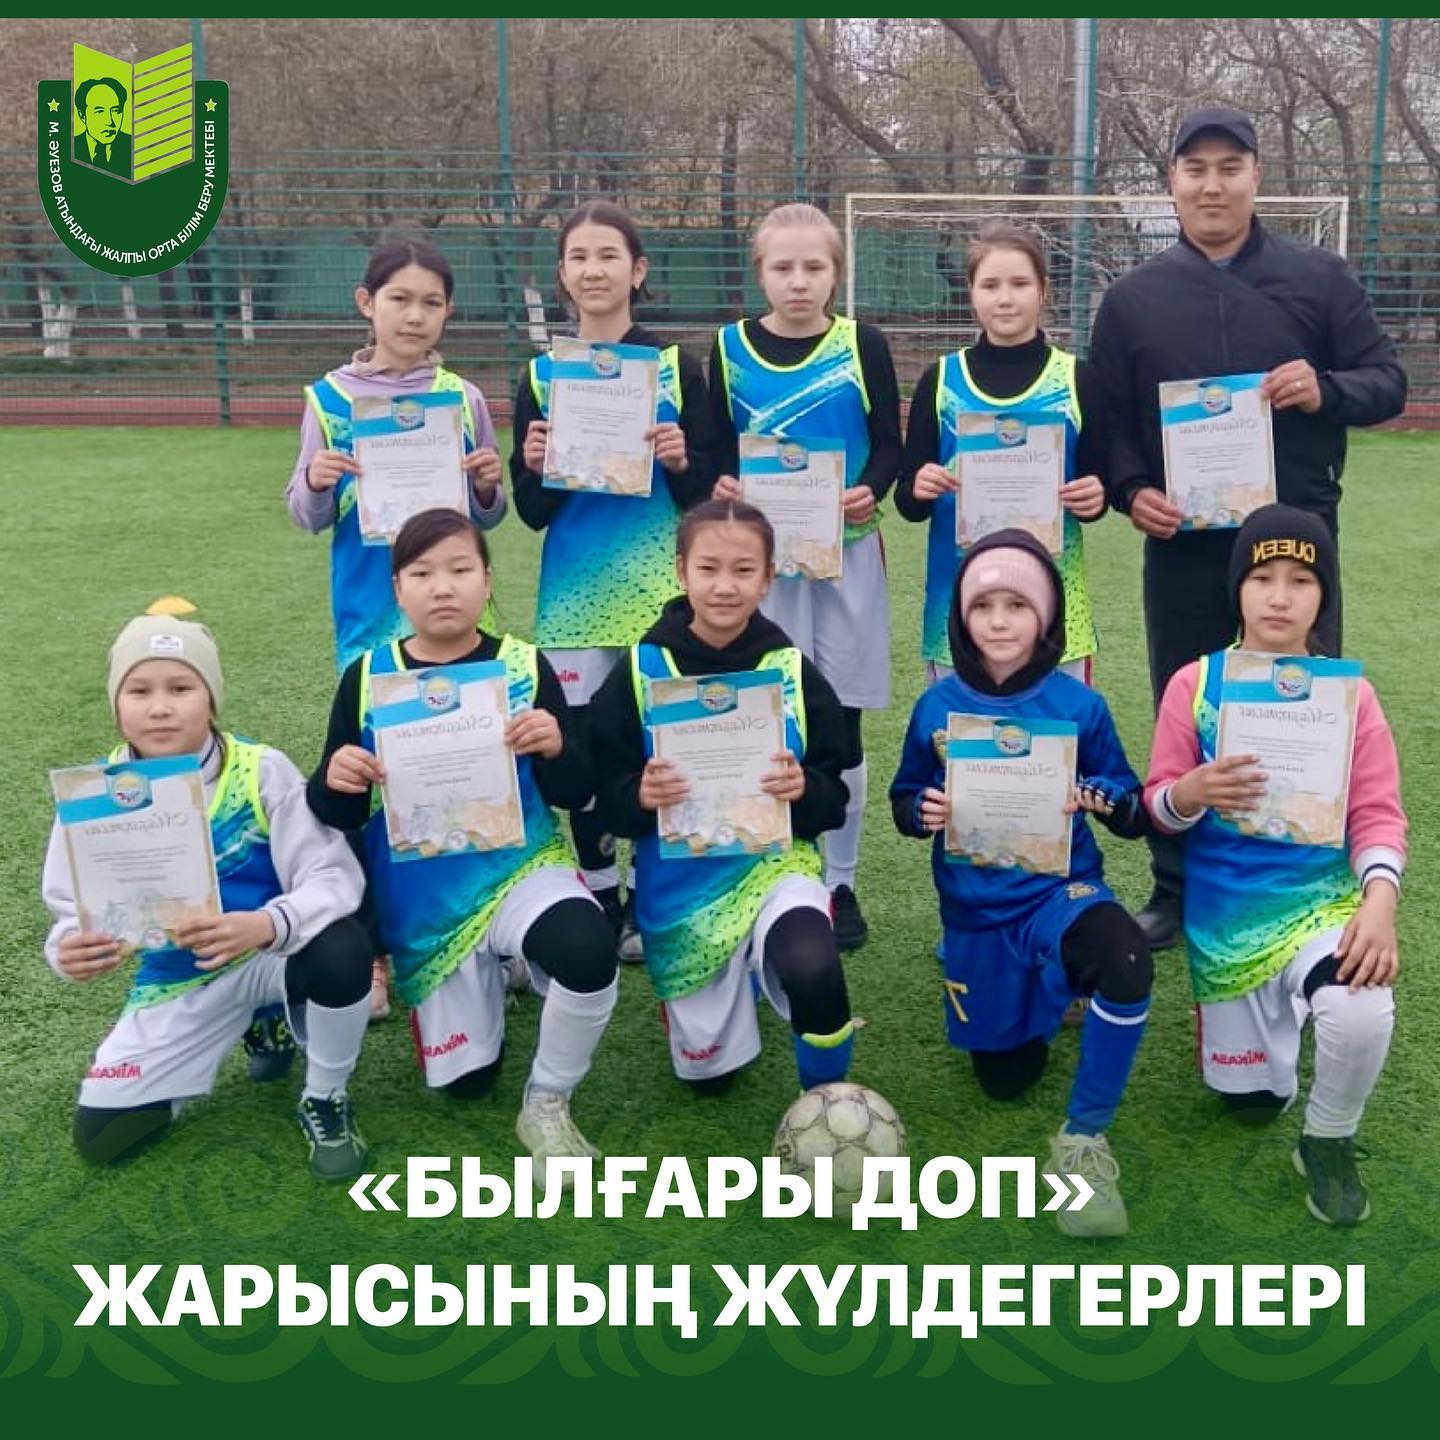 3 мая прошли соревнования по футболу «Былғары доп» среди учащихся 4-5 классов общеобразовательных школ города Павлодар.